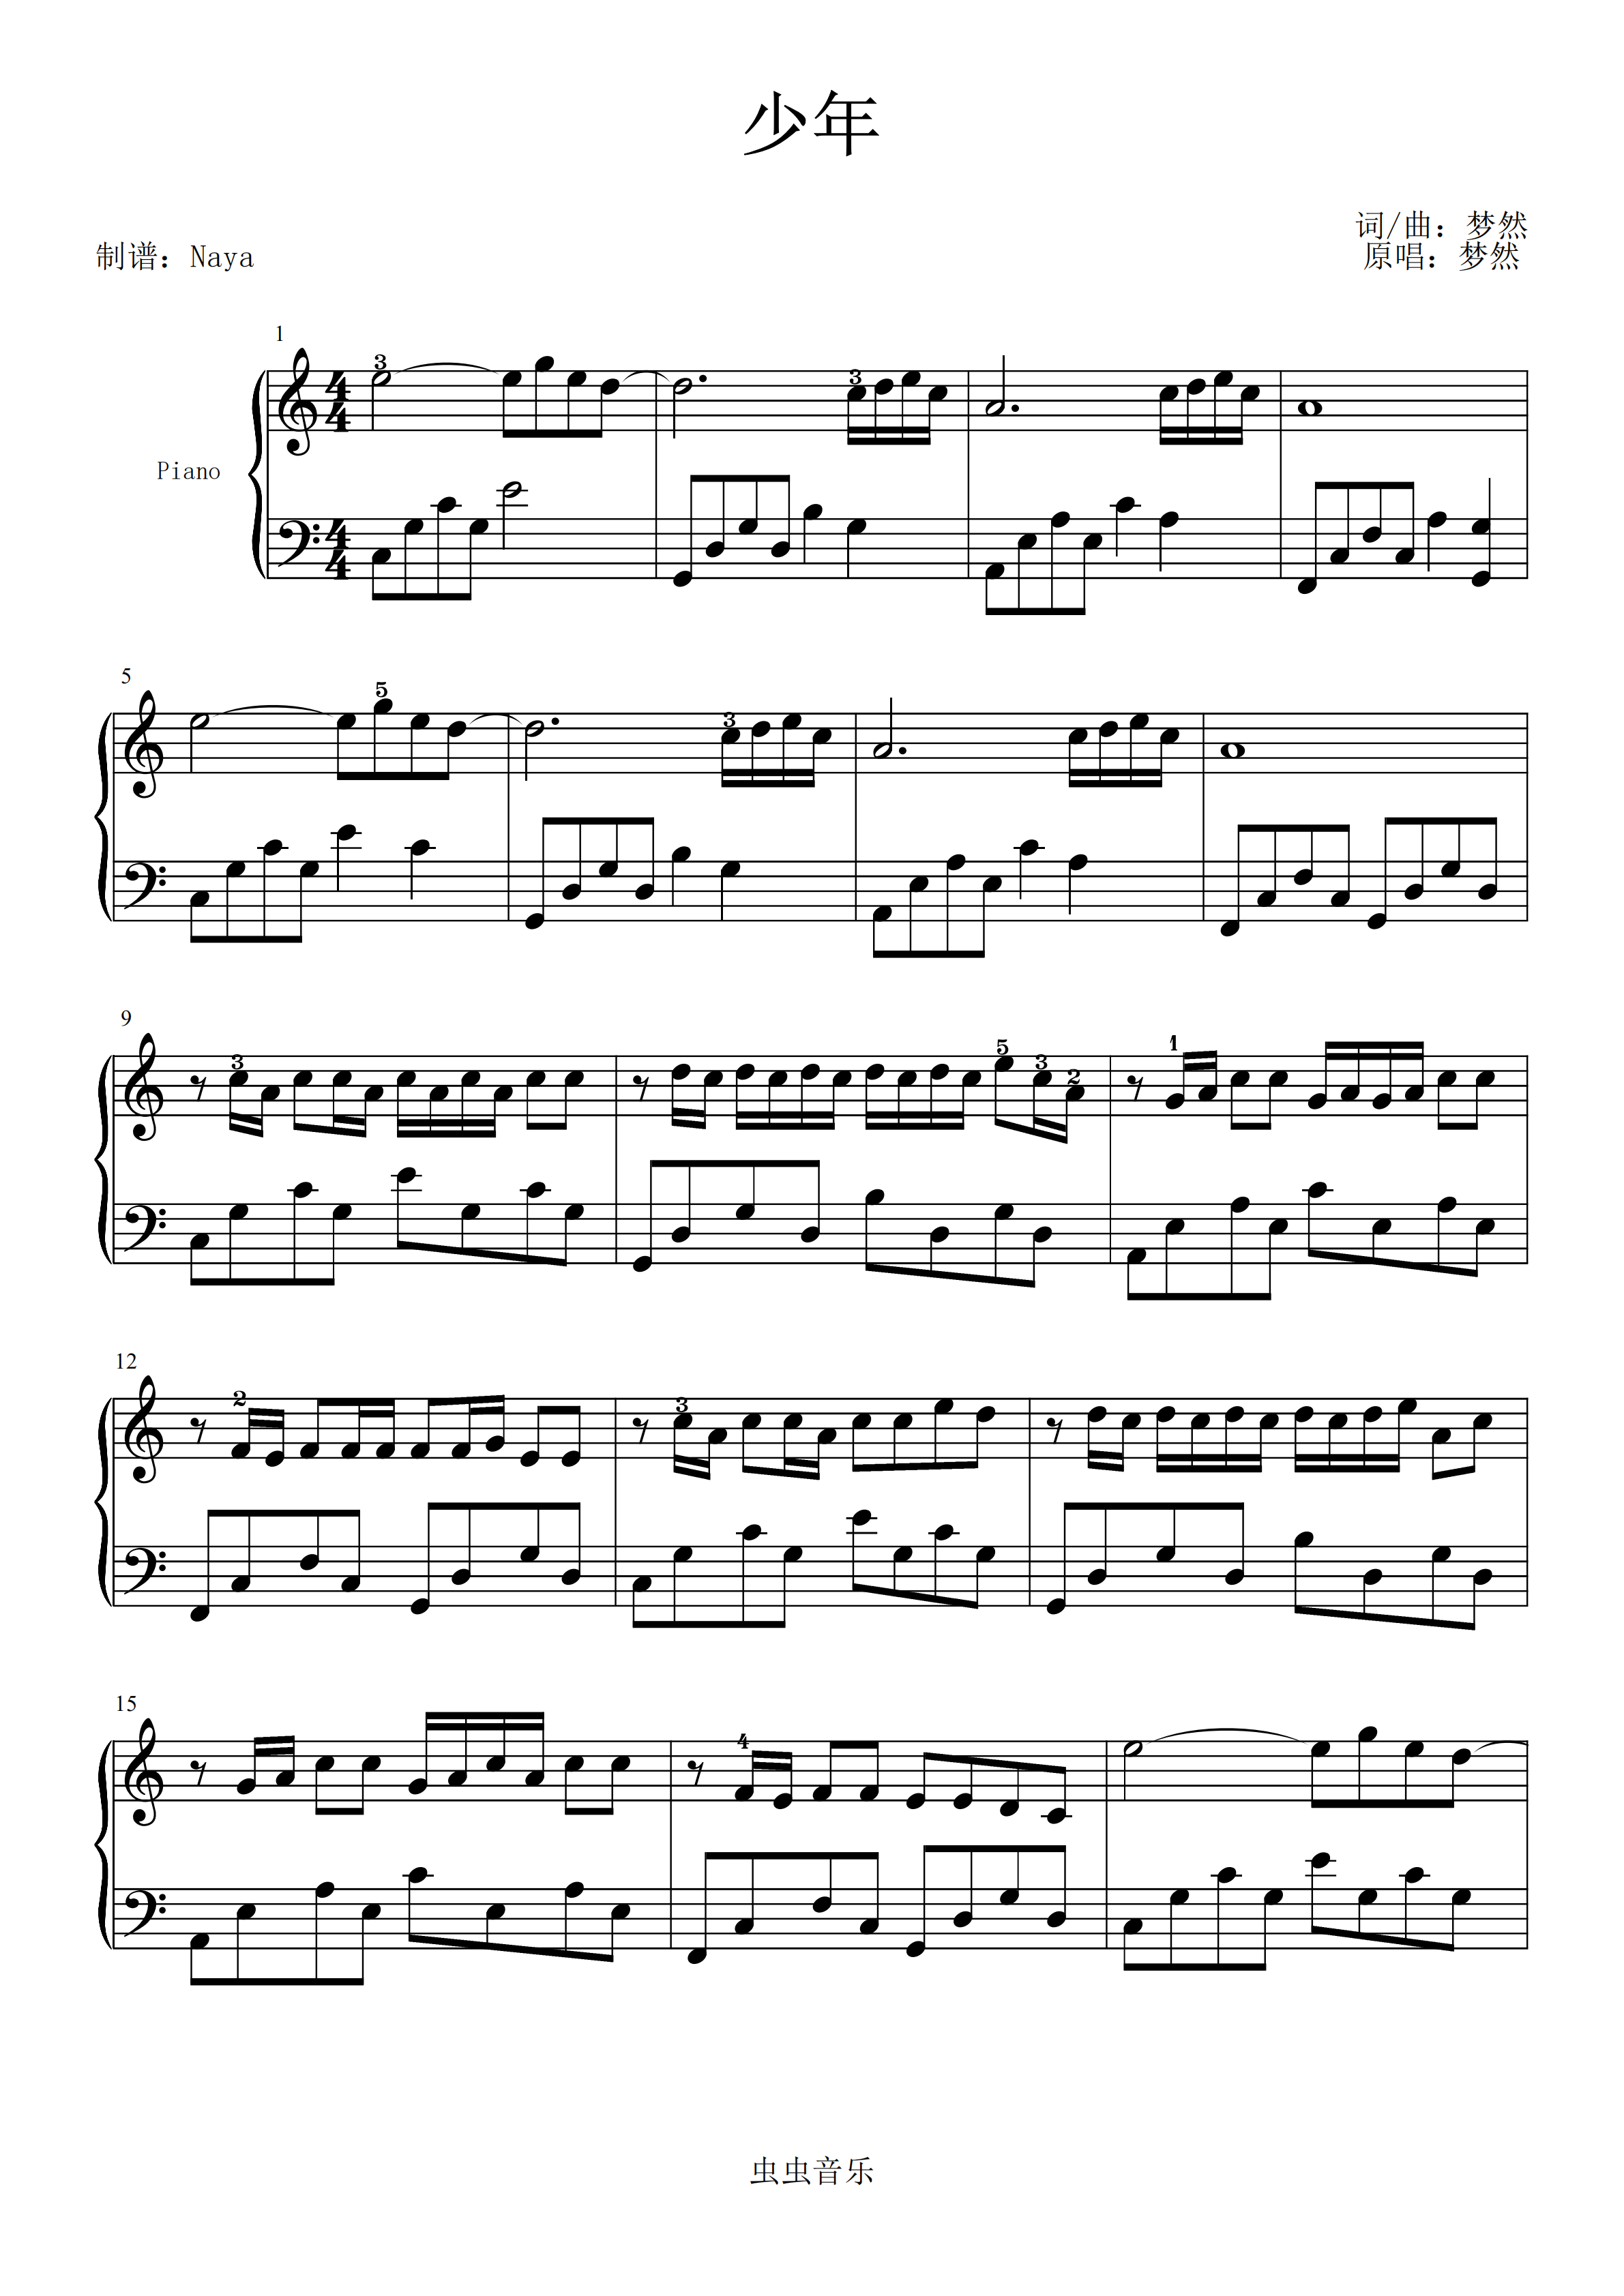 沃尔法特小提琴练习曲60首作品第45号 弦乐类 小提琴_其他曲谱_搜谱网